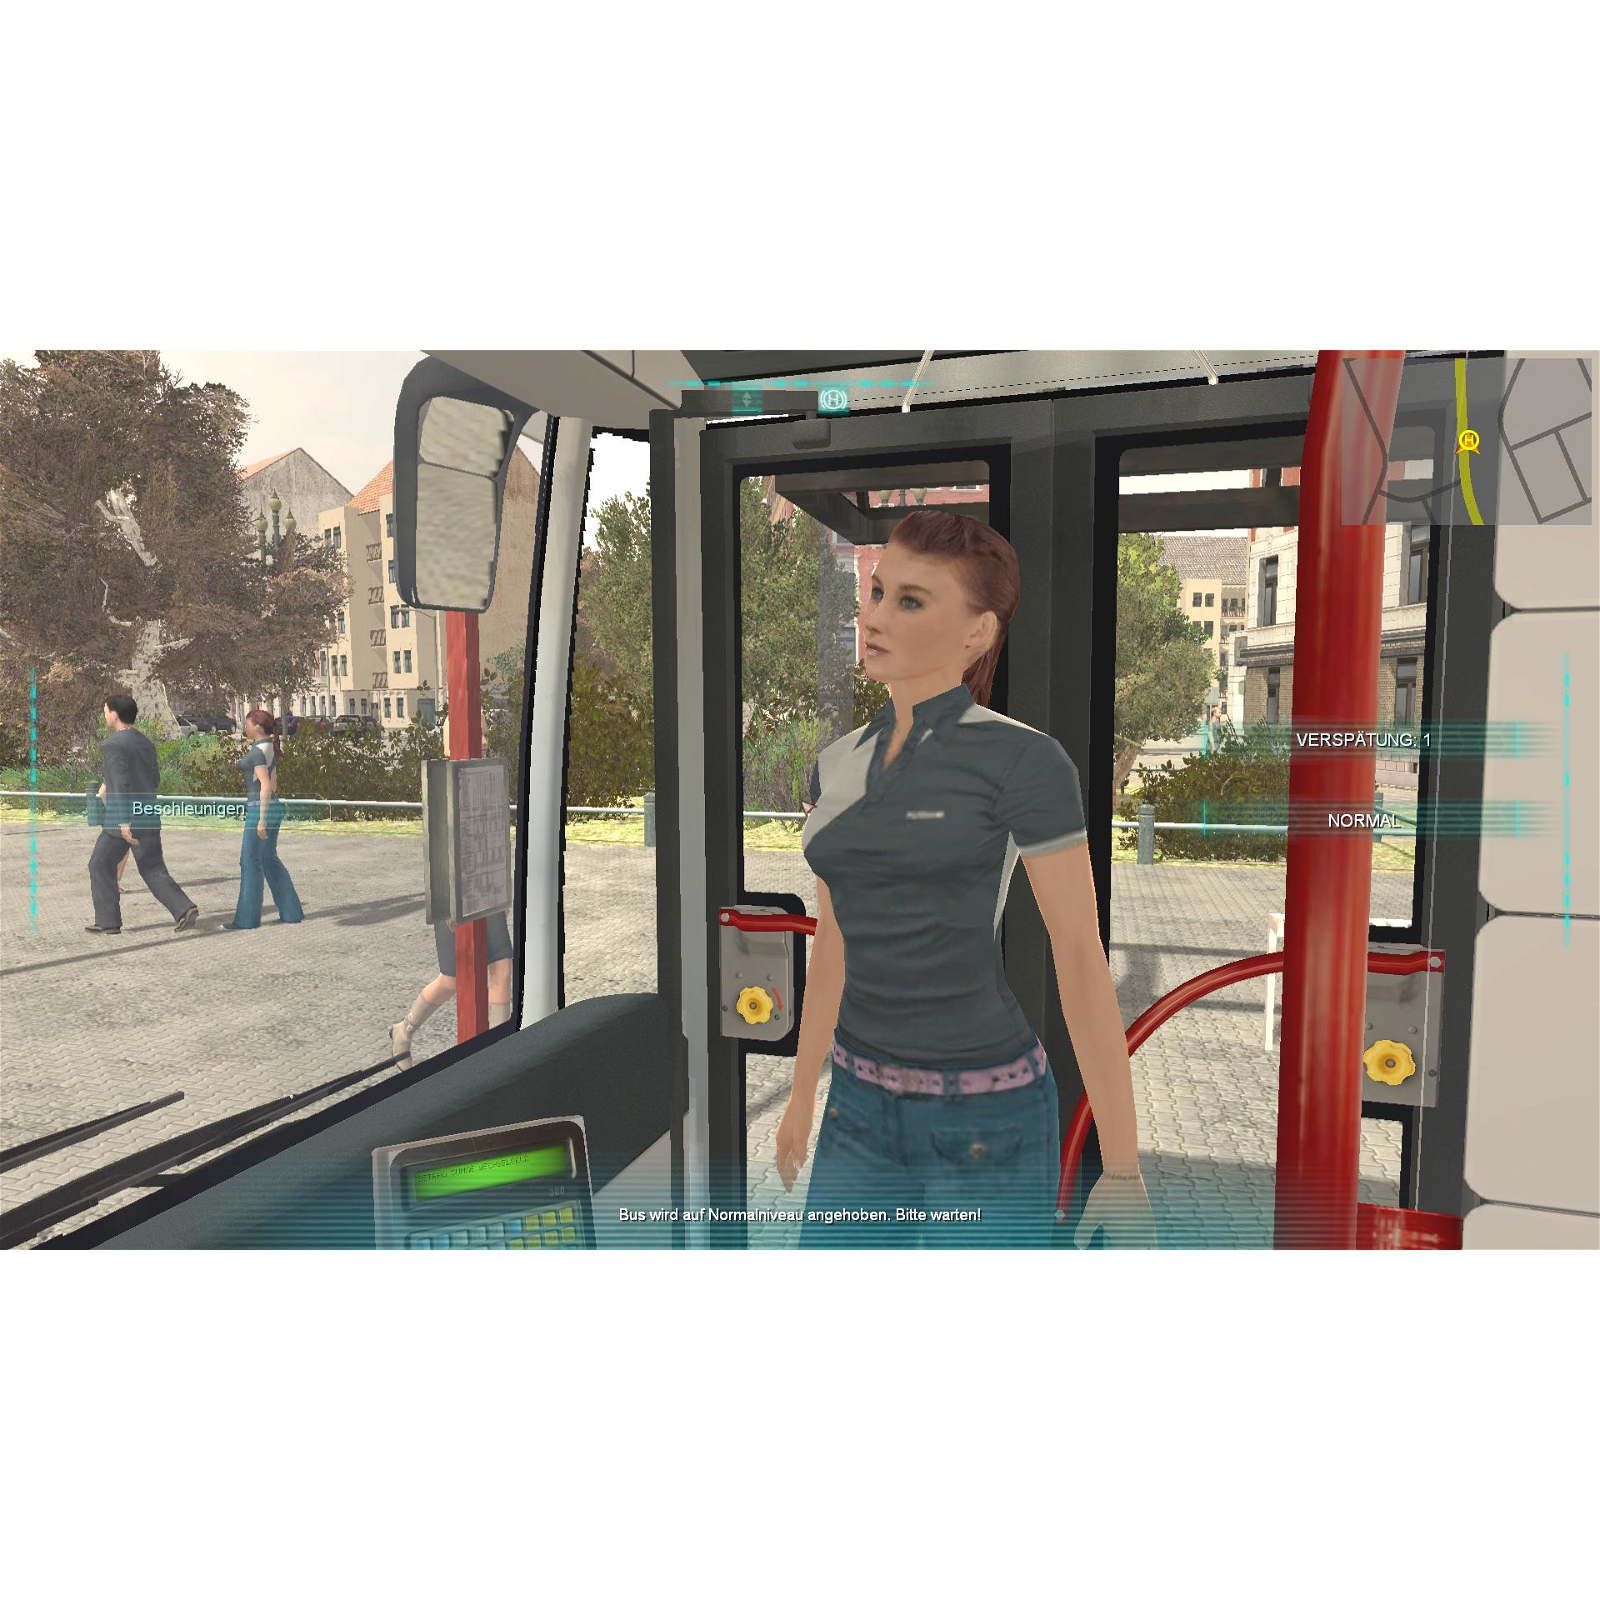 Bus Simulator 2012 - Download